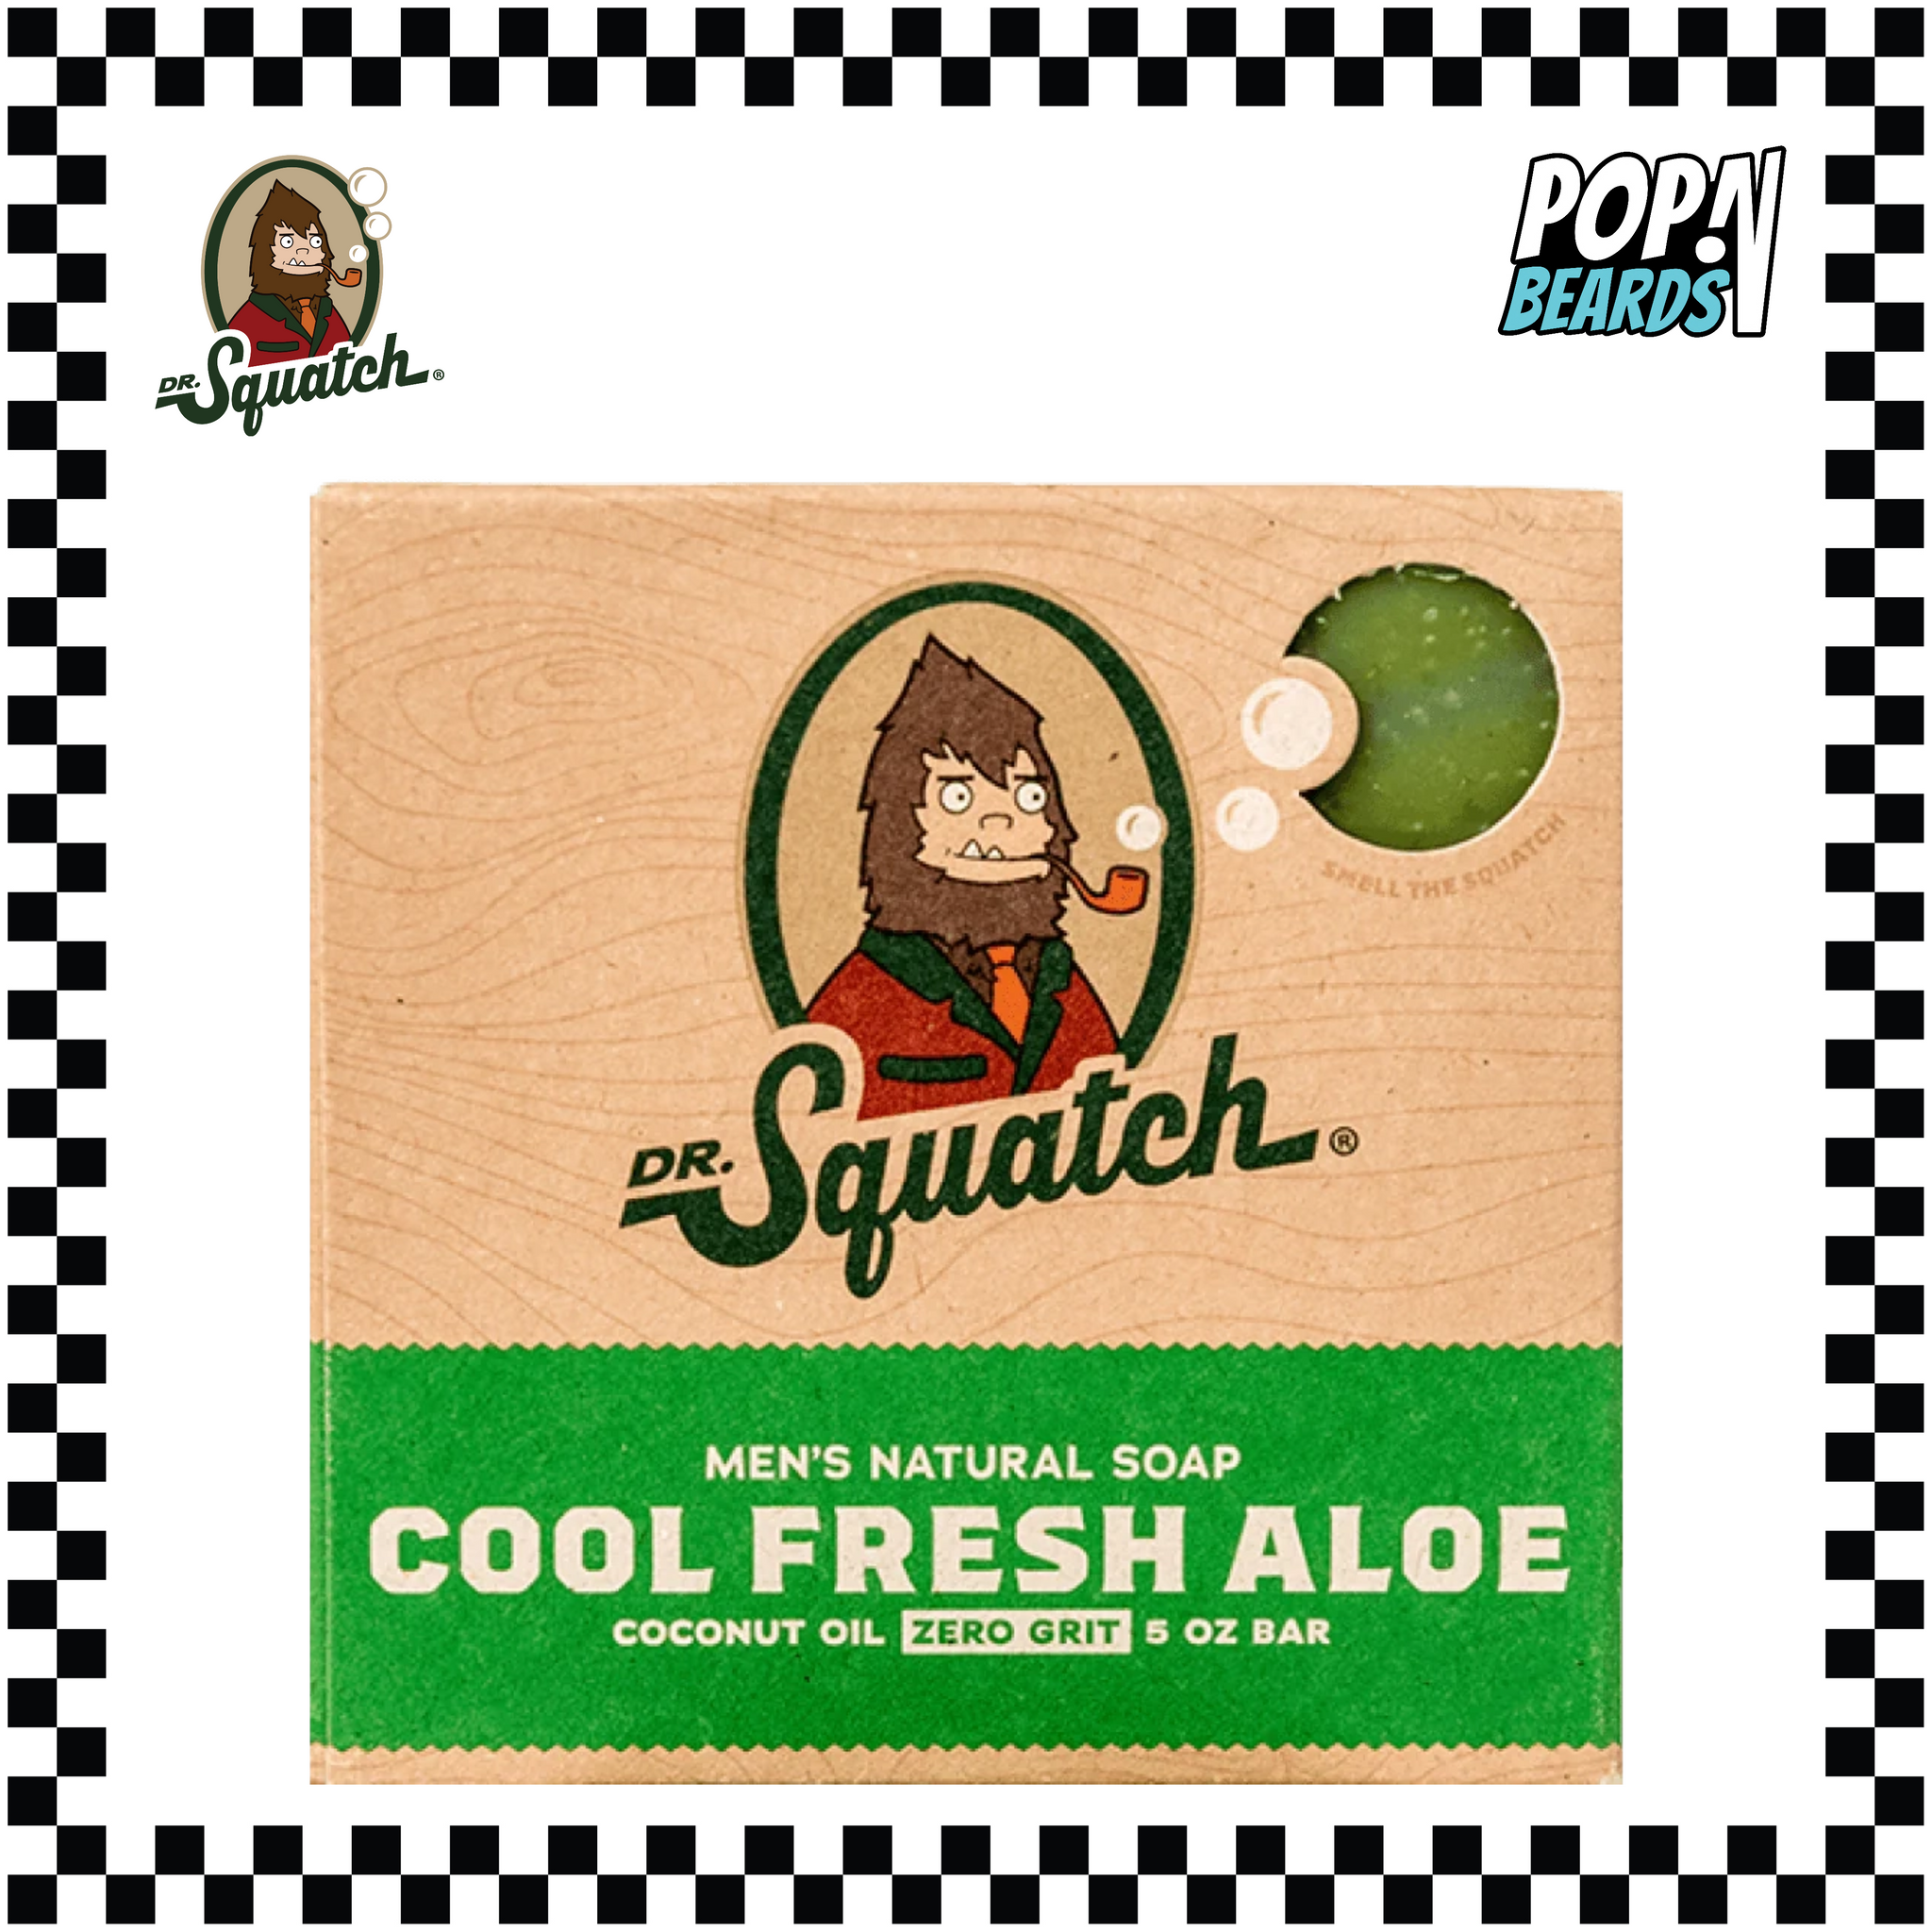 Dr. Squatch, 5oz Bar Soap - Cool Fresh Aloe